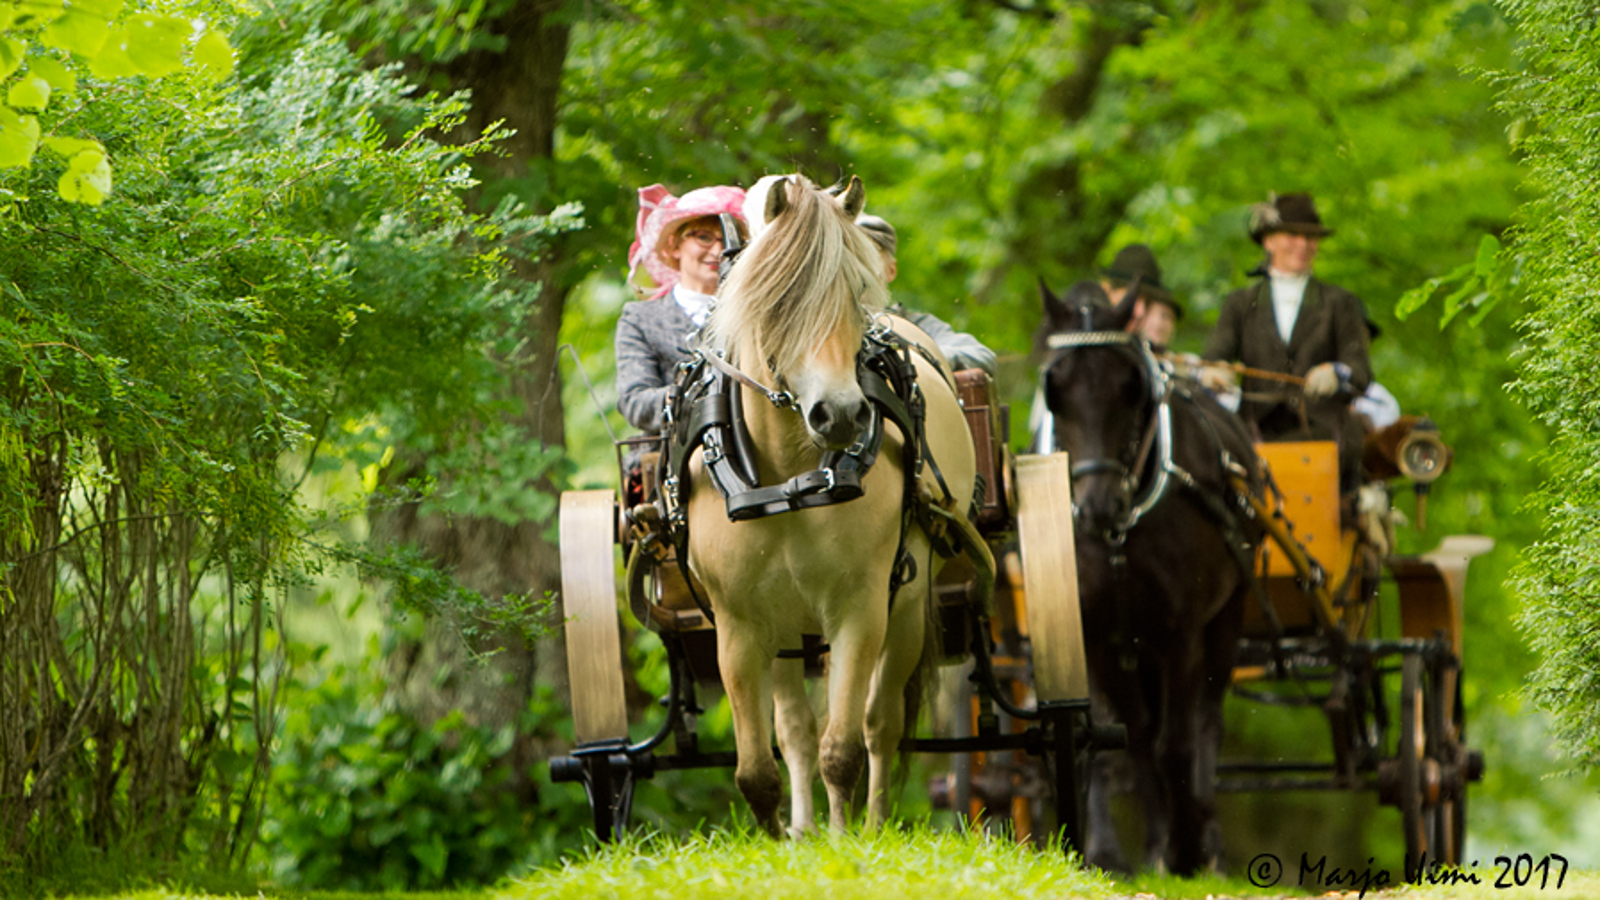 Kuvassa on kahden hevosvaunut, joista ensimmäisessä on valkoinen hevonen vaunuissa näkyy vaaleanpunaiseen lierihattuun pukeutunut nainen. Taustan hevonen on tumma. Ympäristössä on vihreää puustoa.